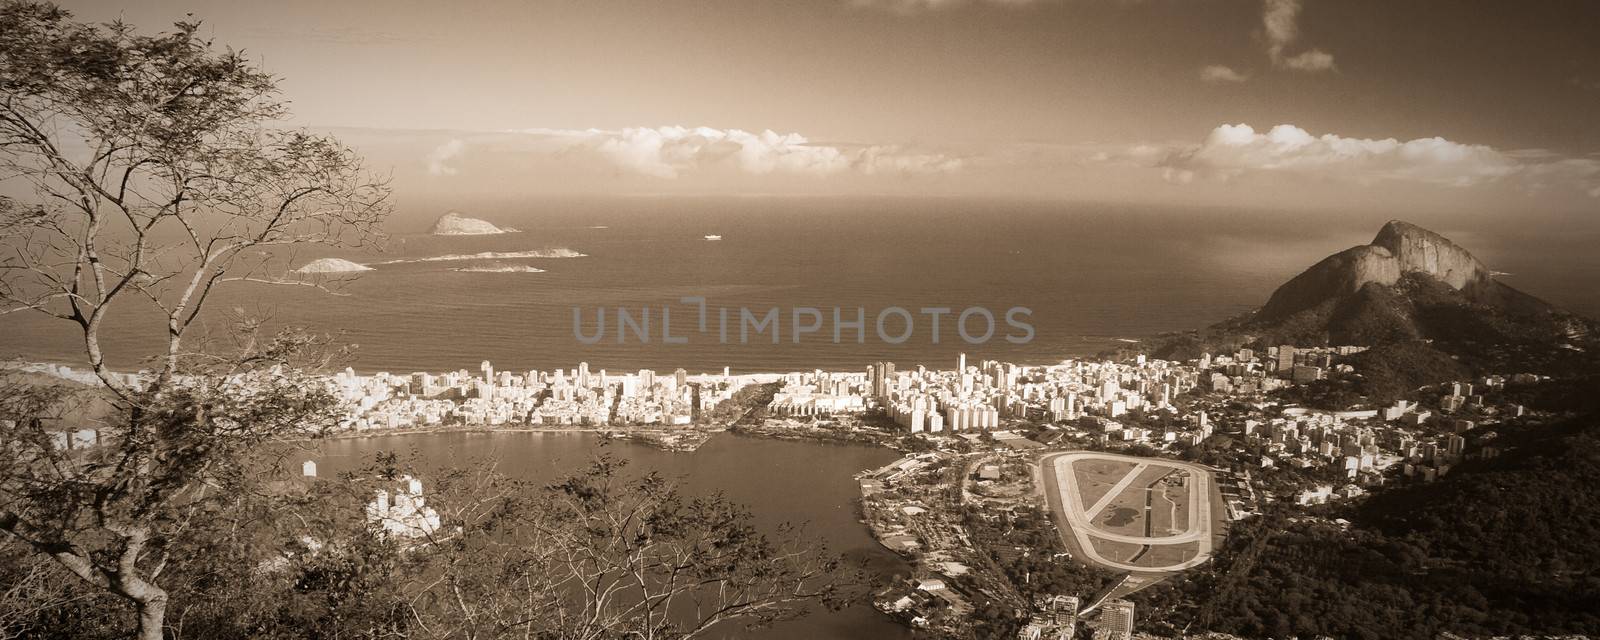 Jockey Club in Rio de Janeiro by CelsoDiniz